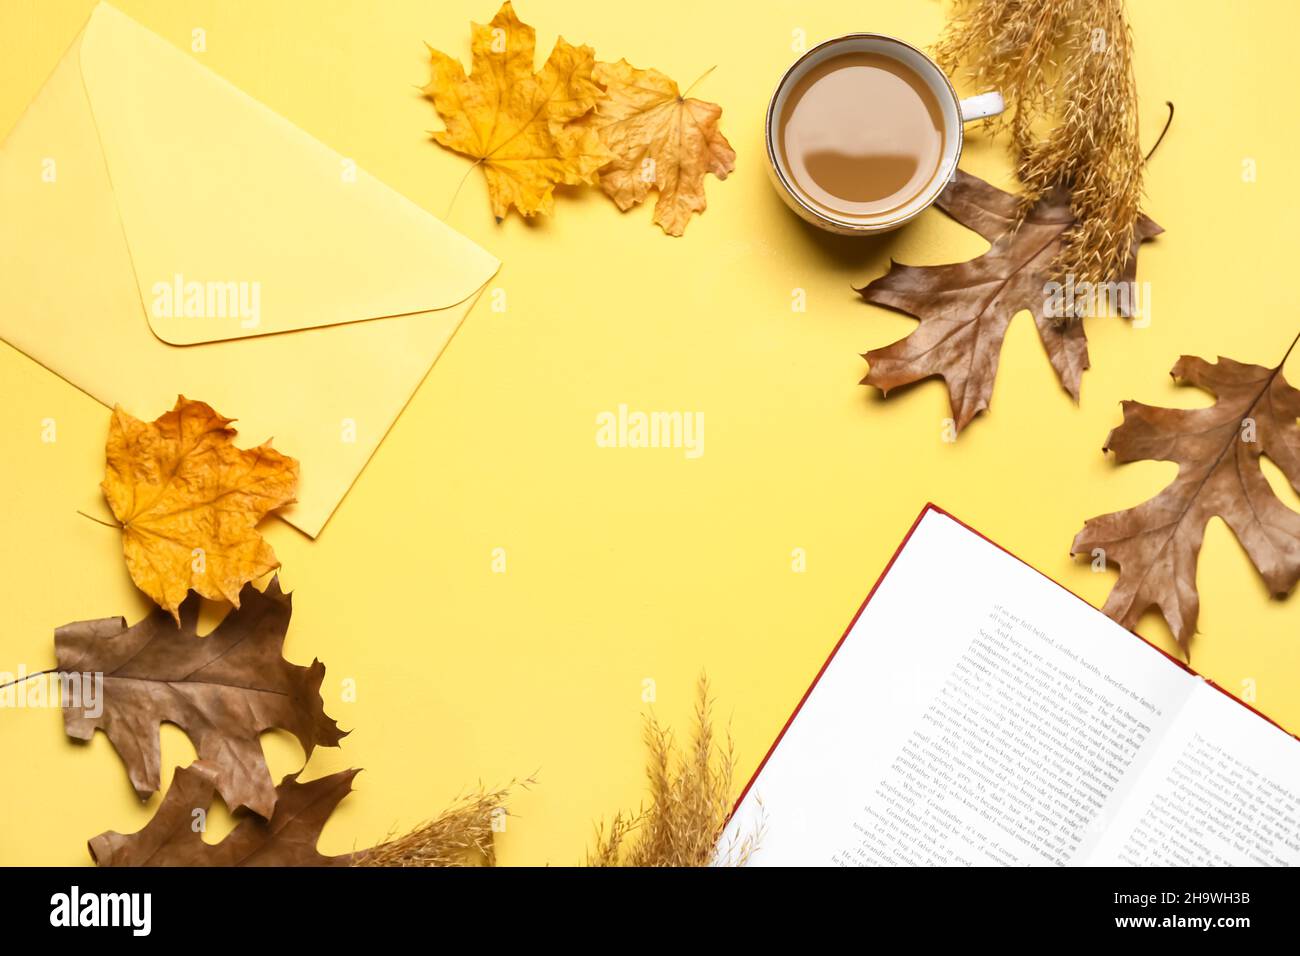 Tasse leckeren Kaffee, Buch, Umschlag und Herbstblätter auf gelbem Hintergrund Stockfoto